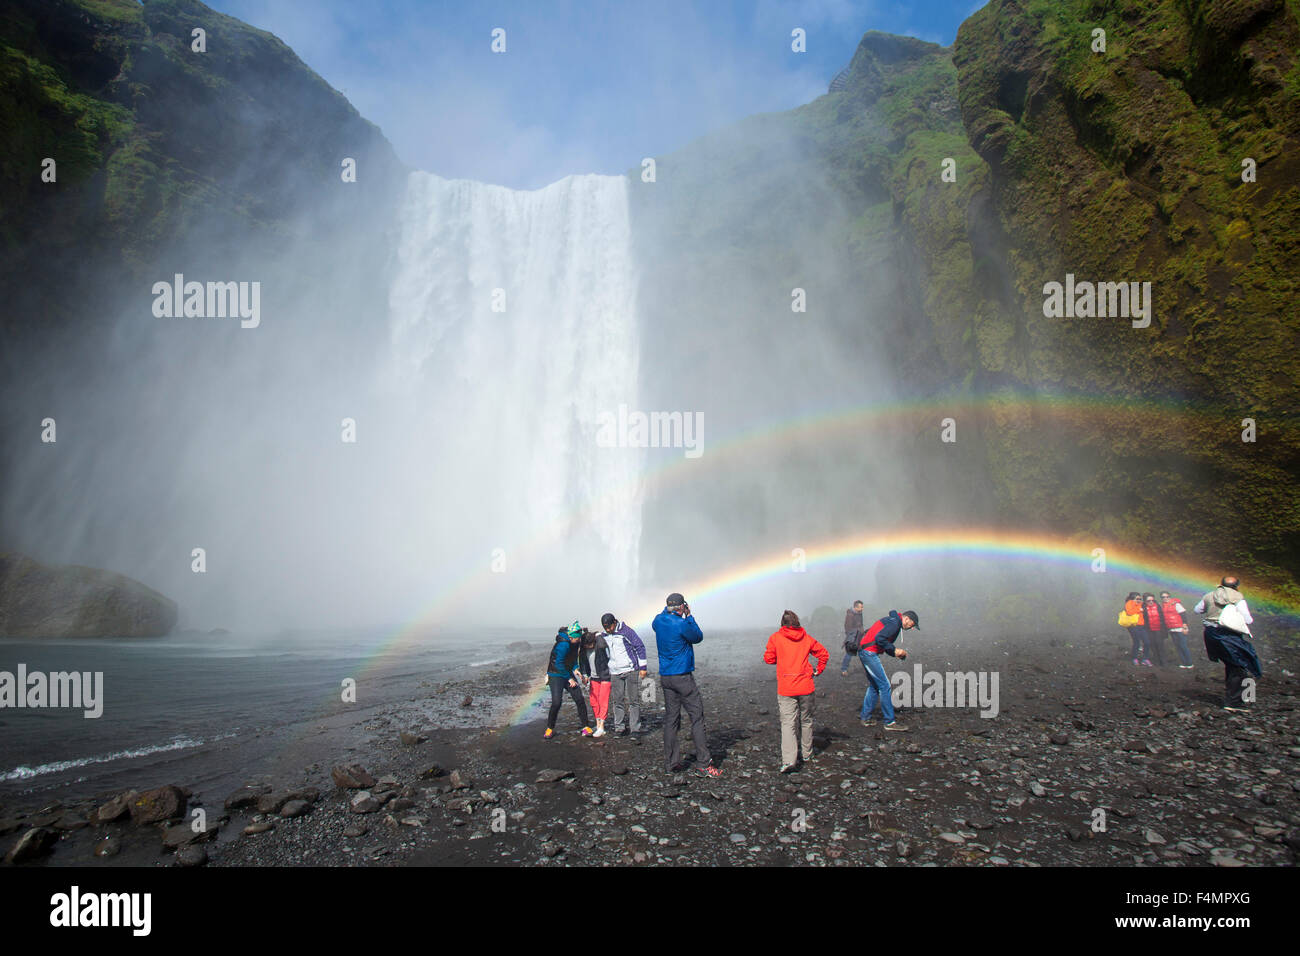 Les touristes dans l'arc-en-ciel en dessous de 60m de haut, la cascade Skogafoss, Skogar, Sudhurland, Islande. Banque D'Images